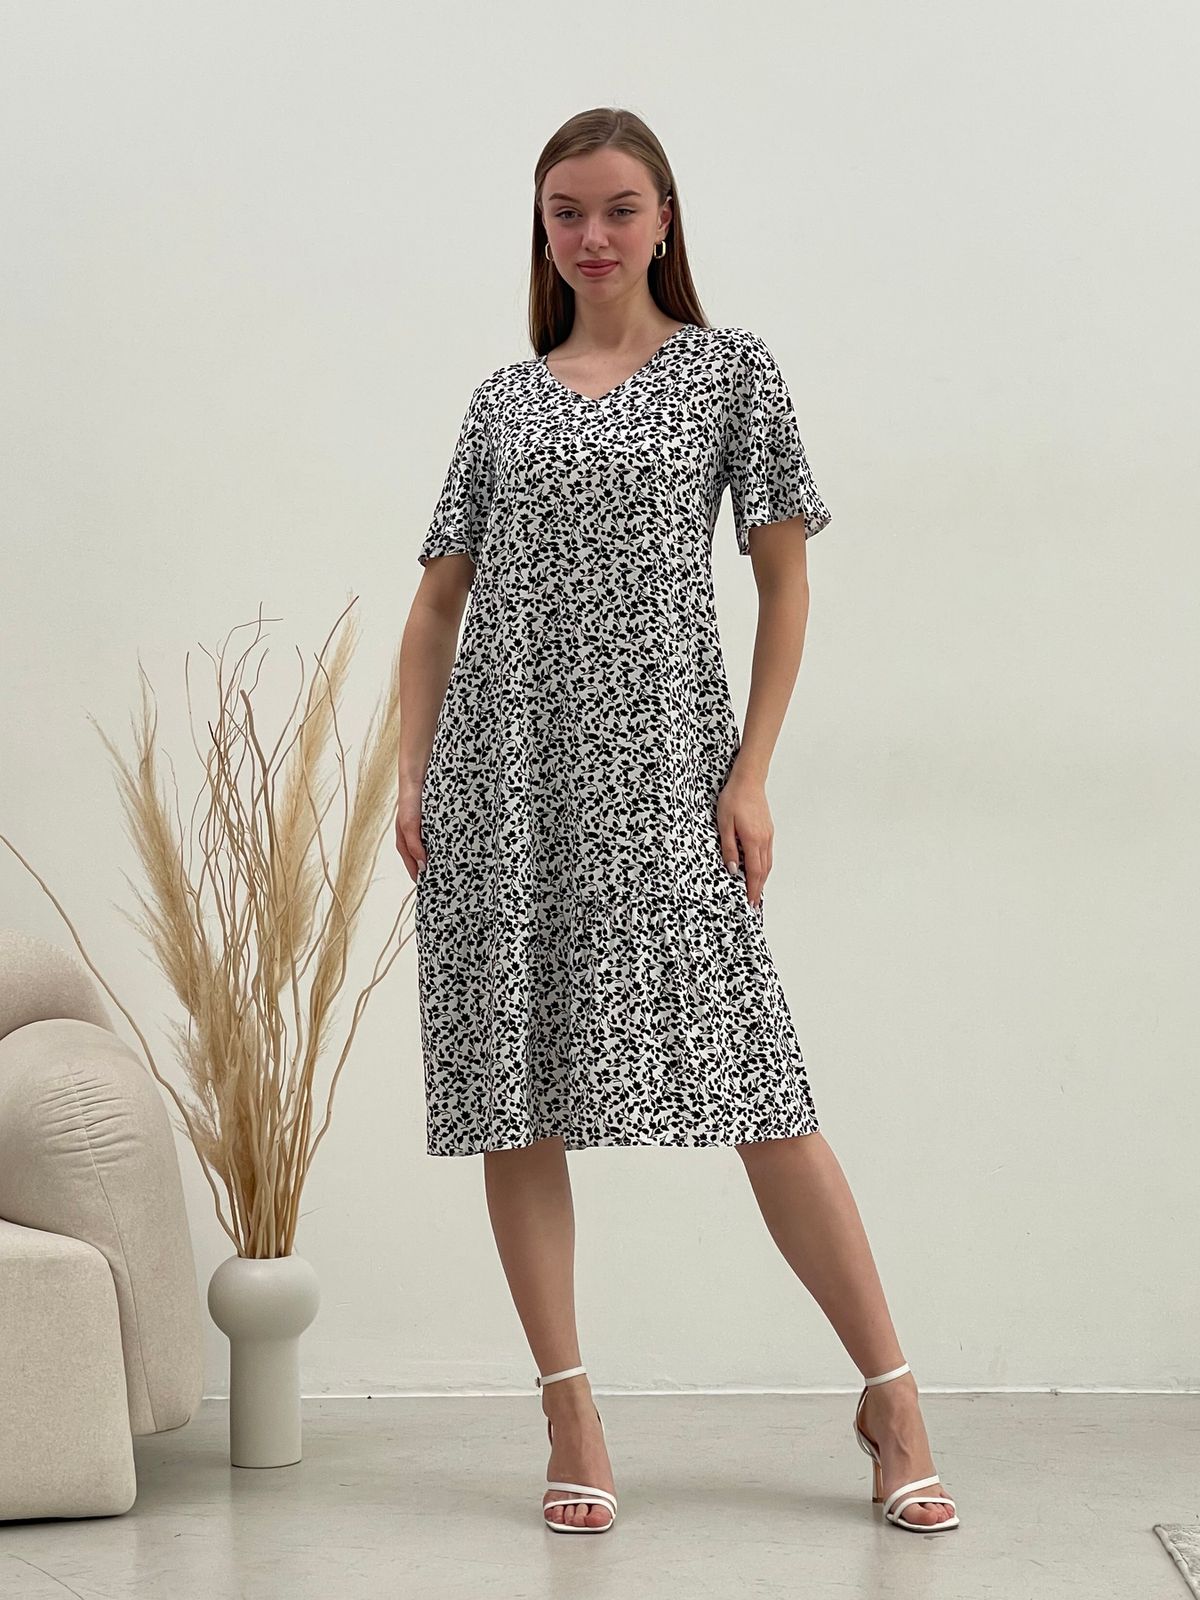 Купить Платье летнее ниже колен в цветочек белое Merlini Мискано 700001284 размер 42-44 (S-M) в интернет-магазине